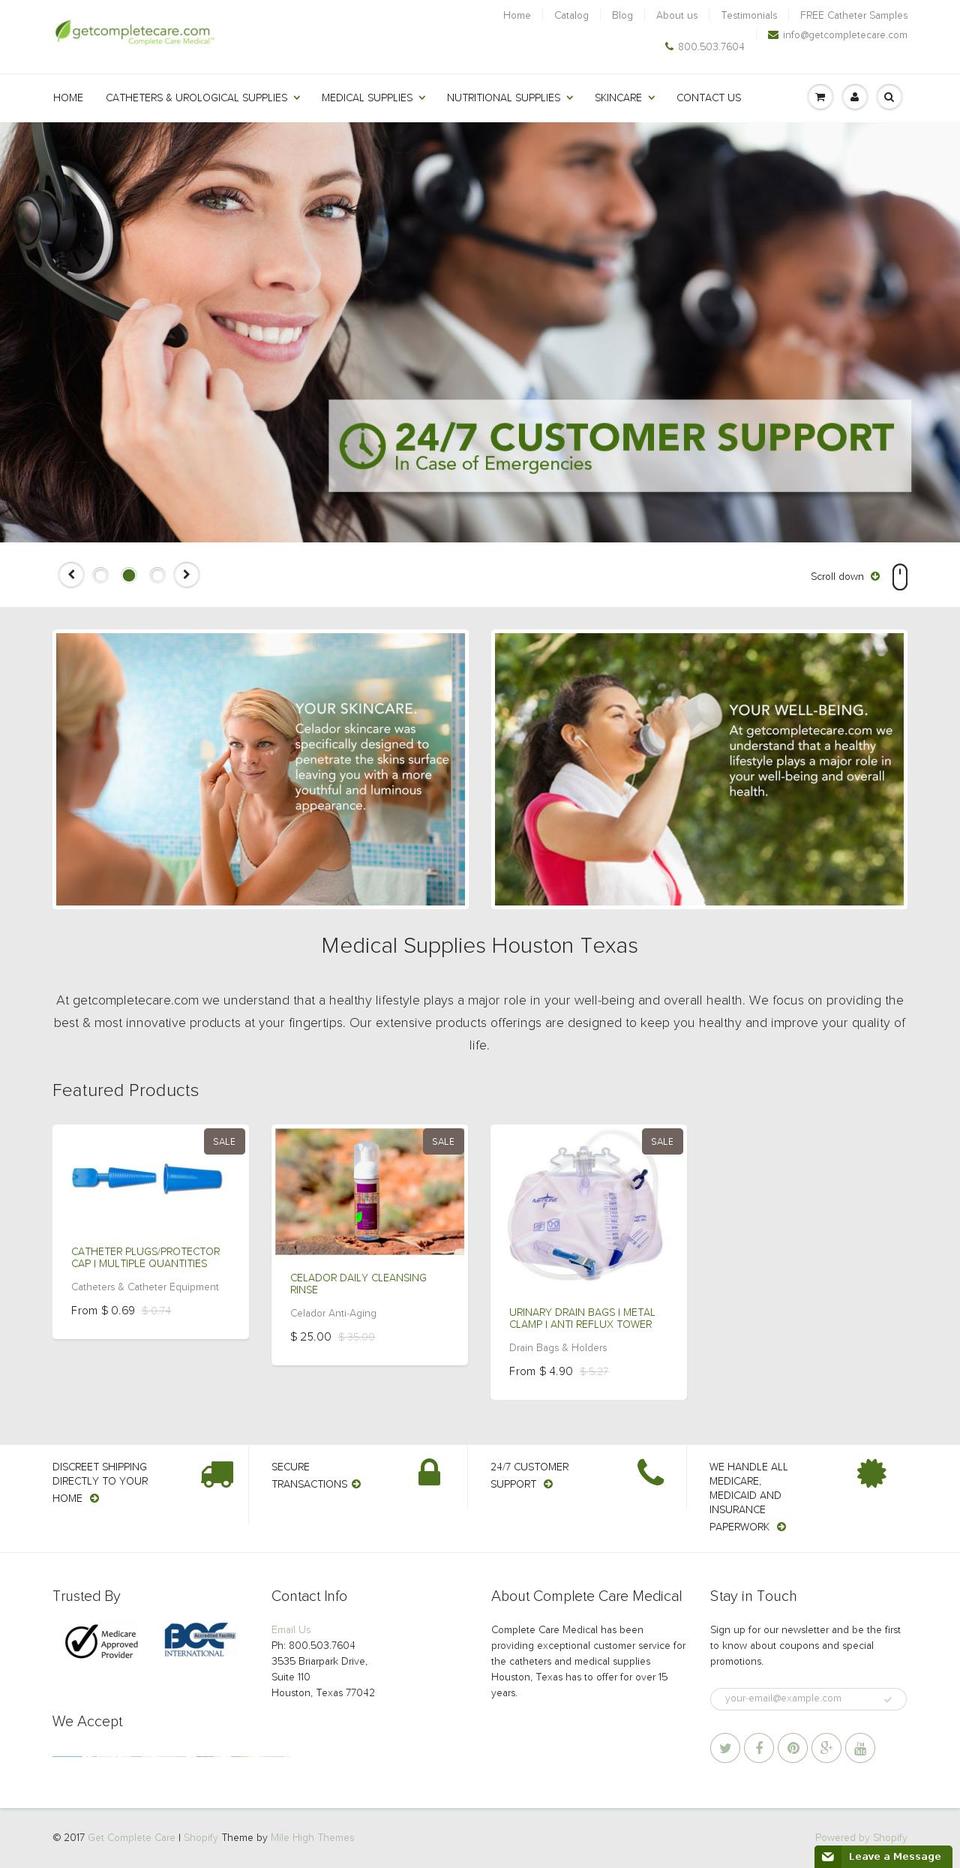 getcompletecare.com shopify website screenshot